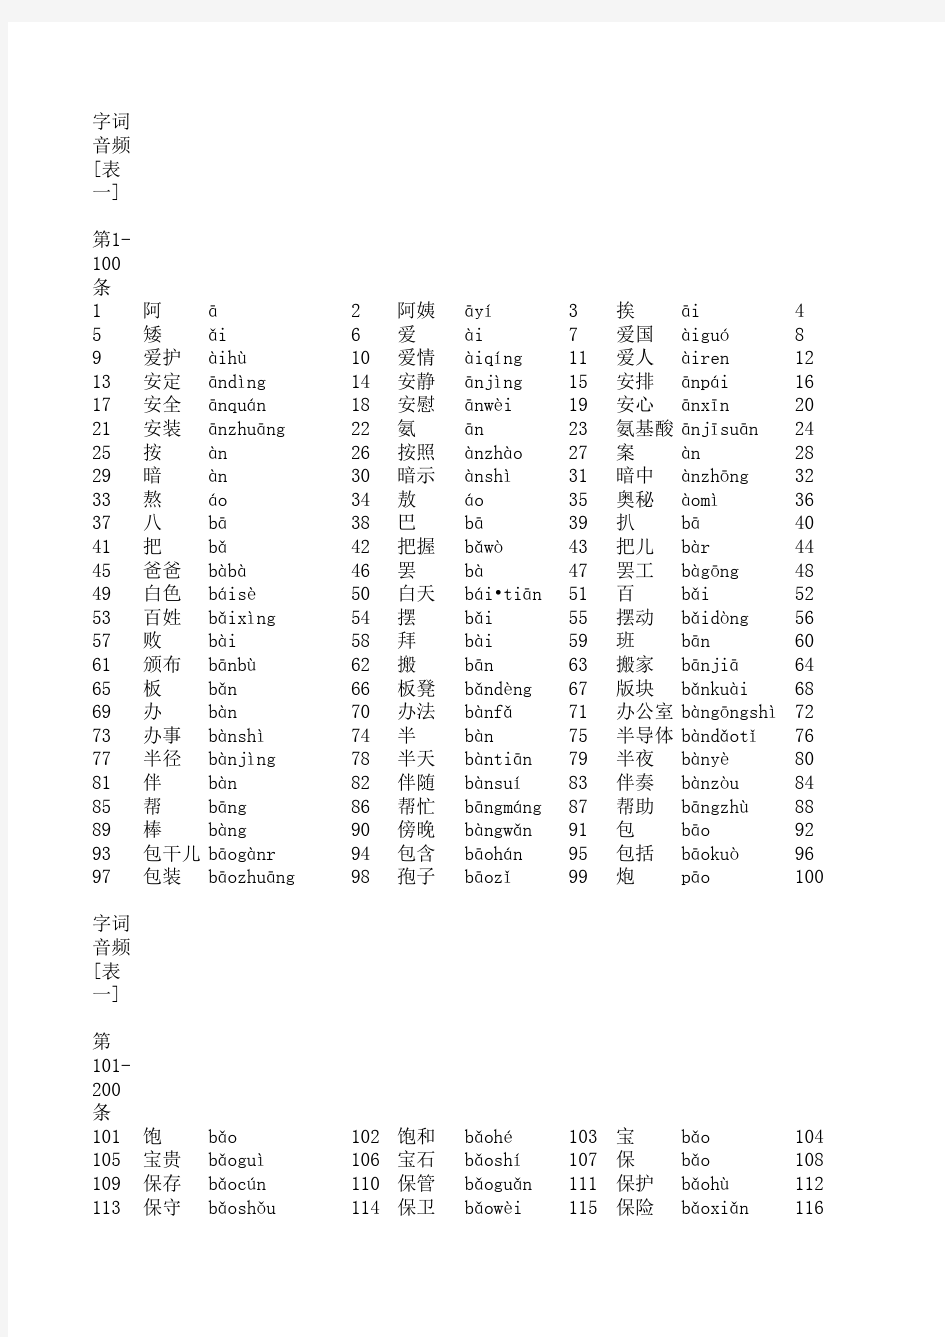 全国普通话水平测试用普通话词语表(表一+表二)